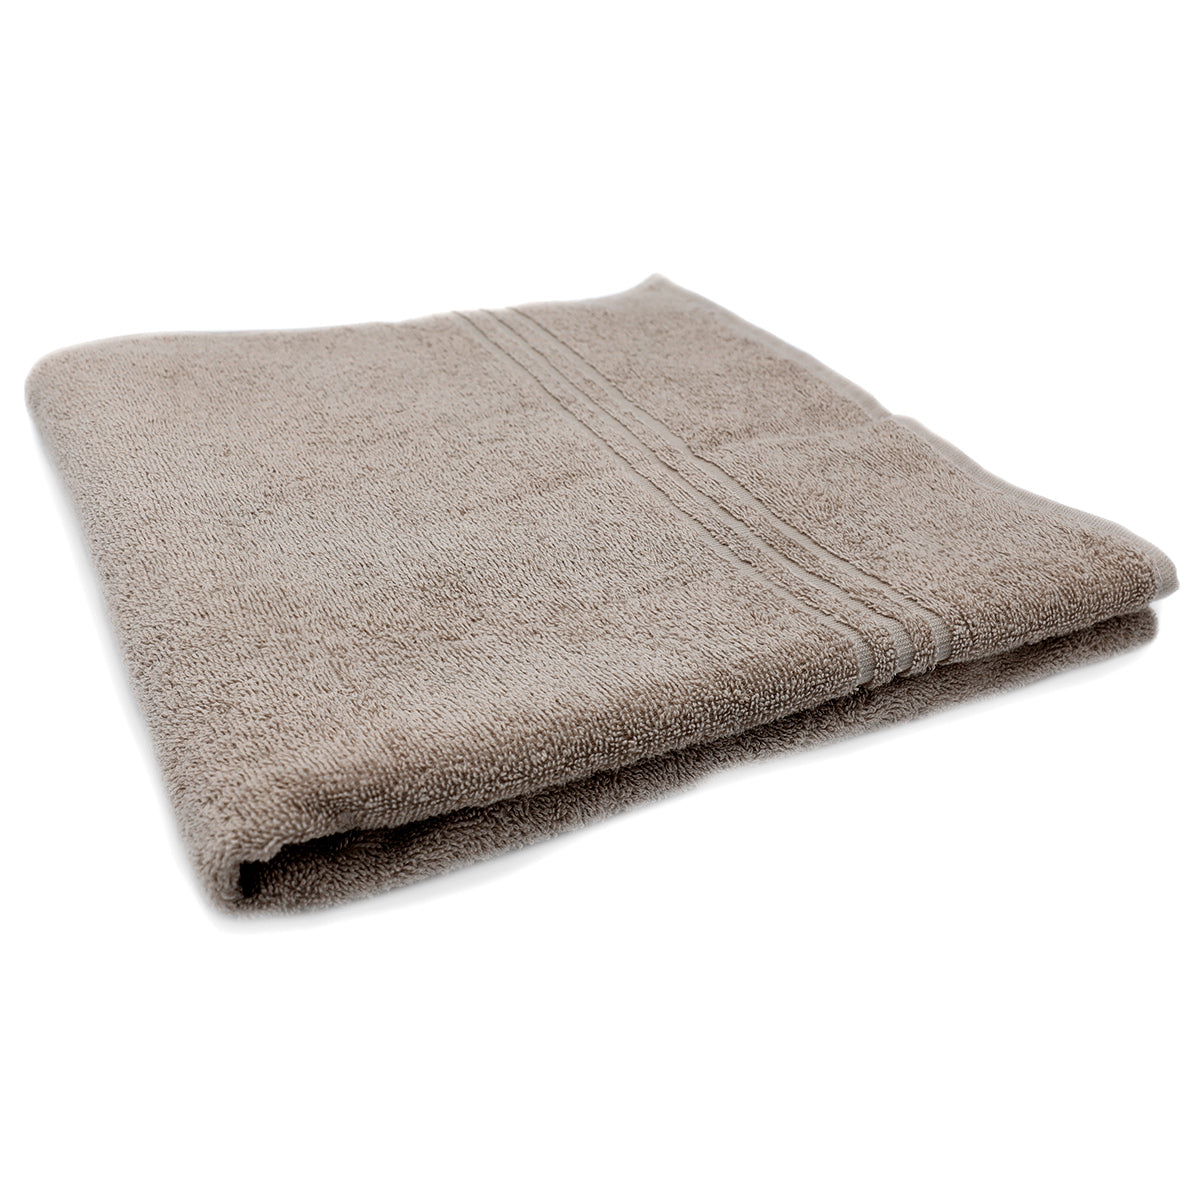 (10 stk.) Grønland badehåndklæde - 70 x 140 cm - sand